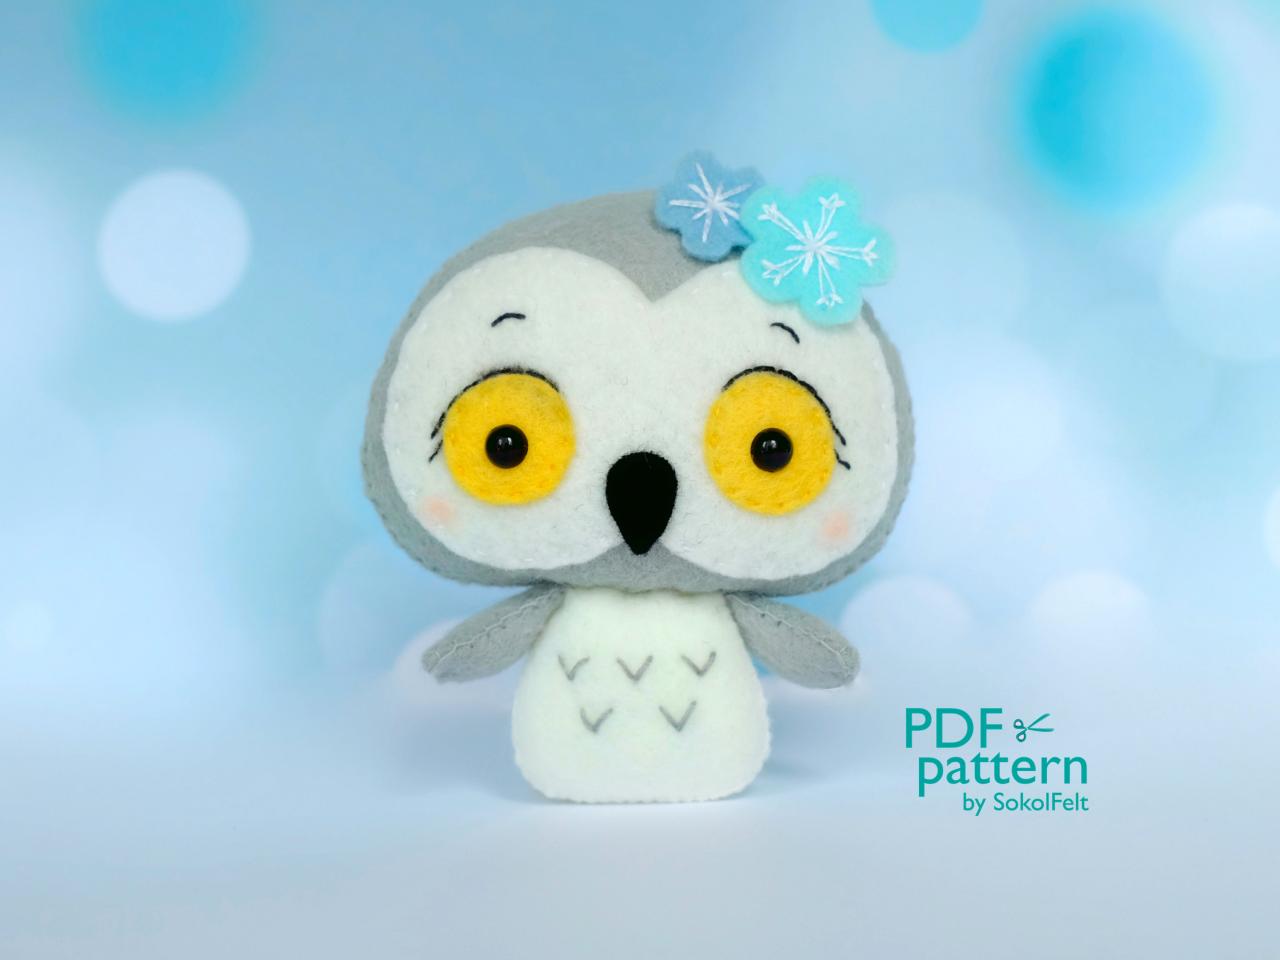 Polar Owl Toy Pdf Pattern, Felt Arctic Snowy Owl Sewing Digital Tutorial, Baby Crib Mobile Plush Toy